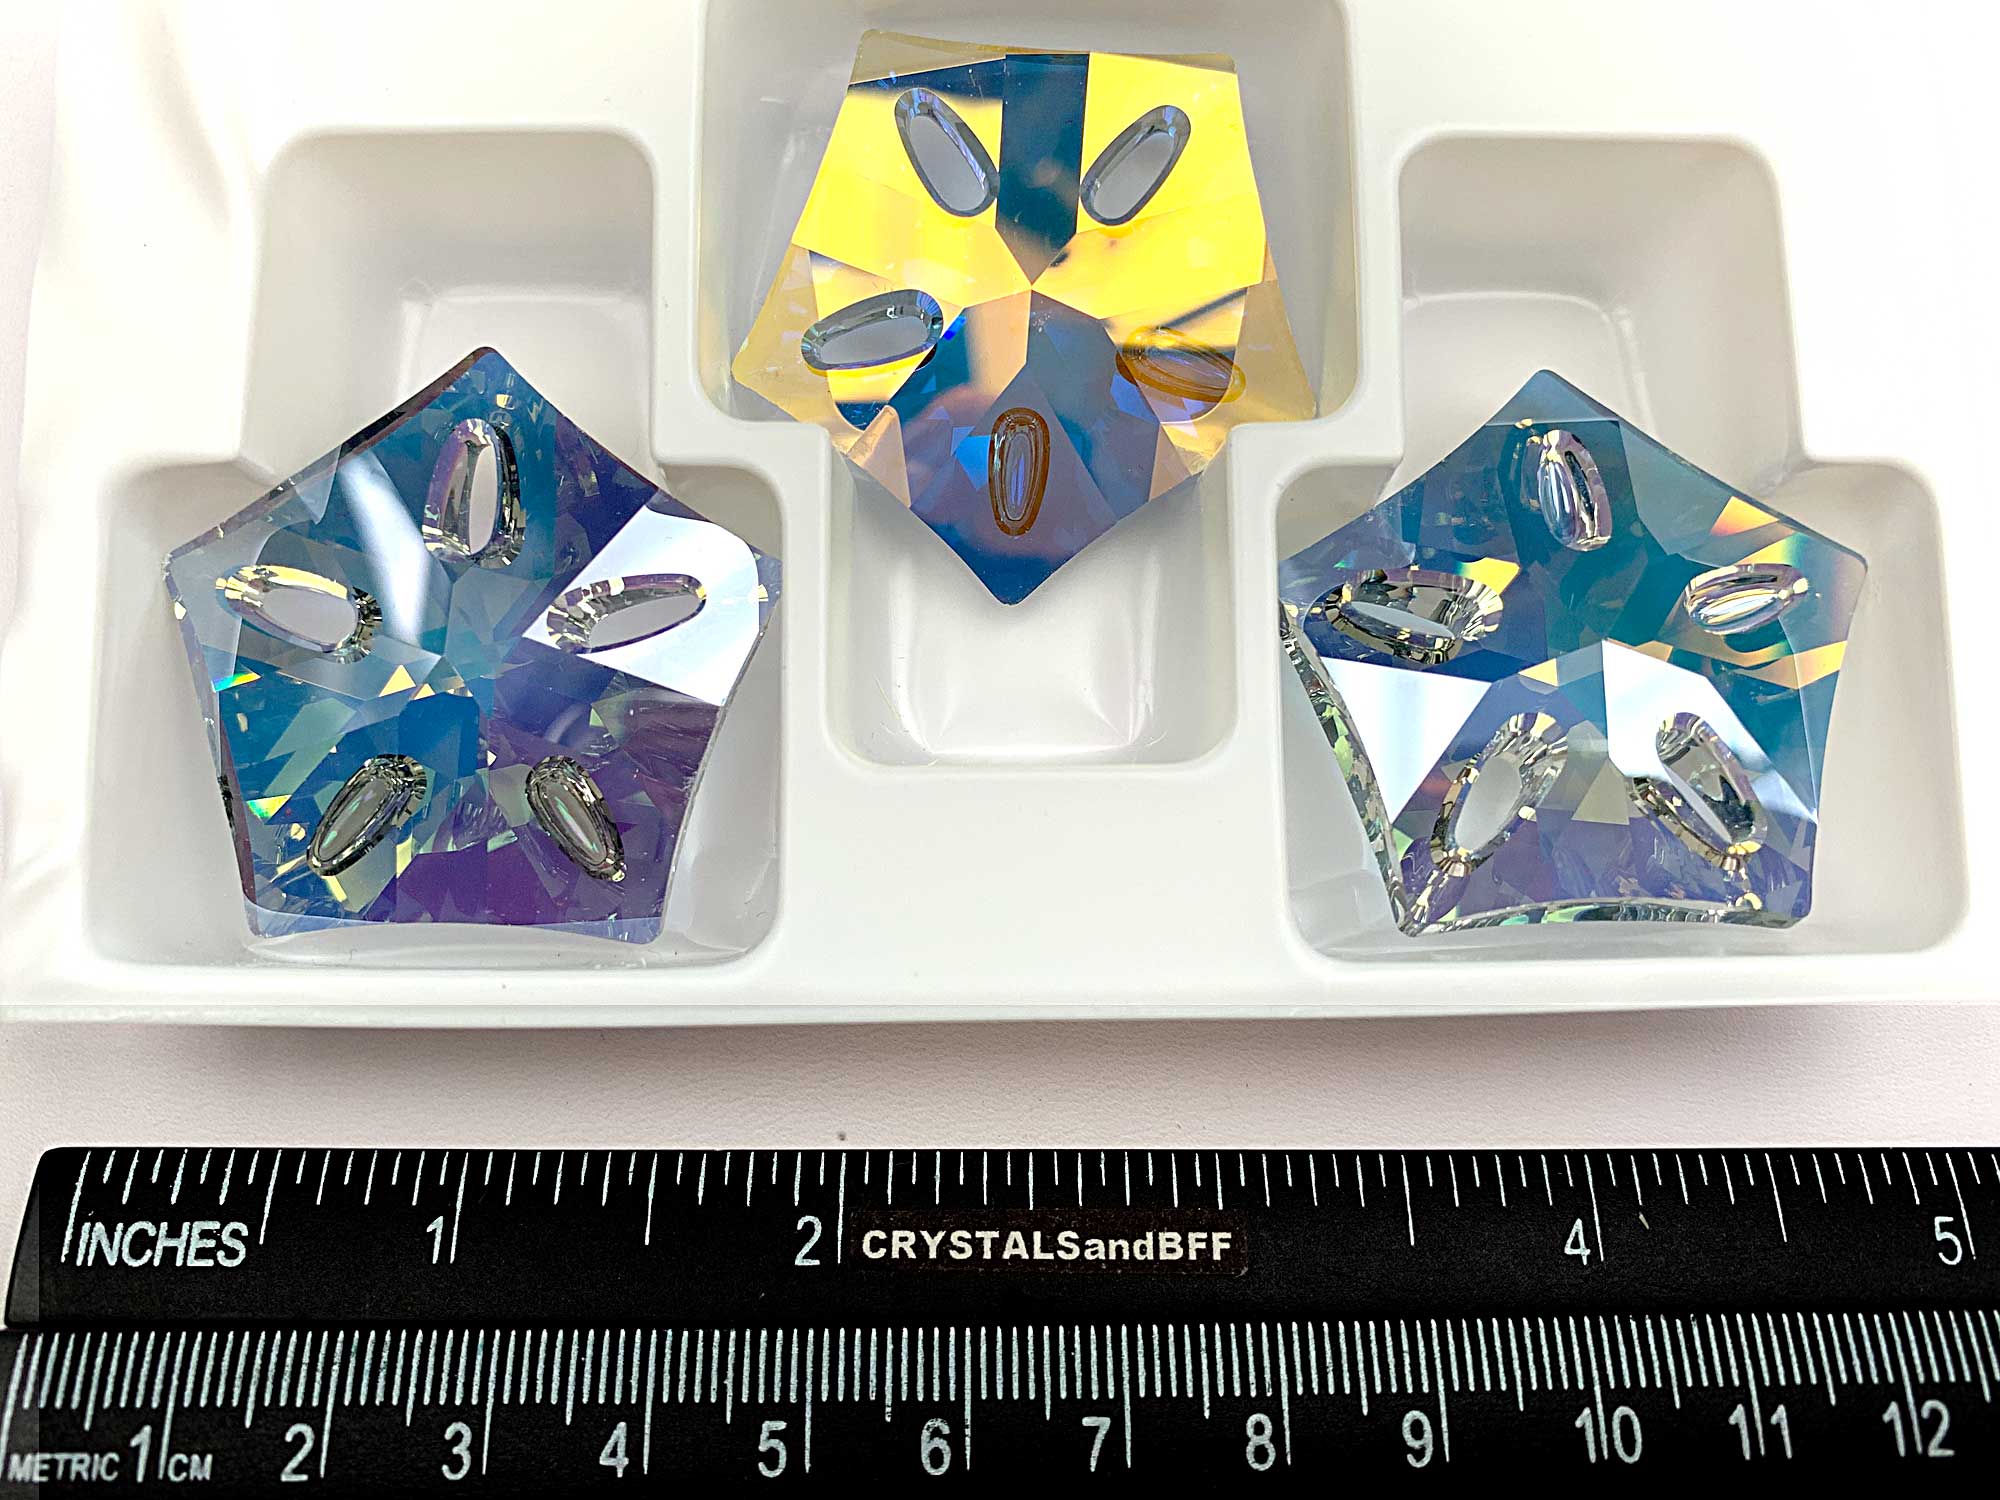 Swarovski Art.# 6907 - Lotus Pendant 40mm Crystal Blue Rainbow AB custom coated - Designer Edition